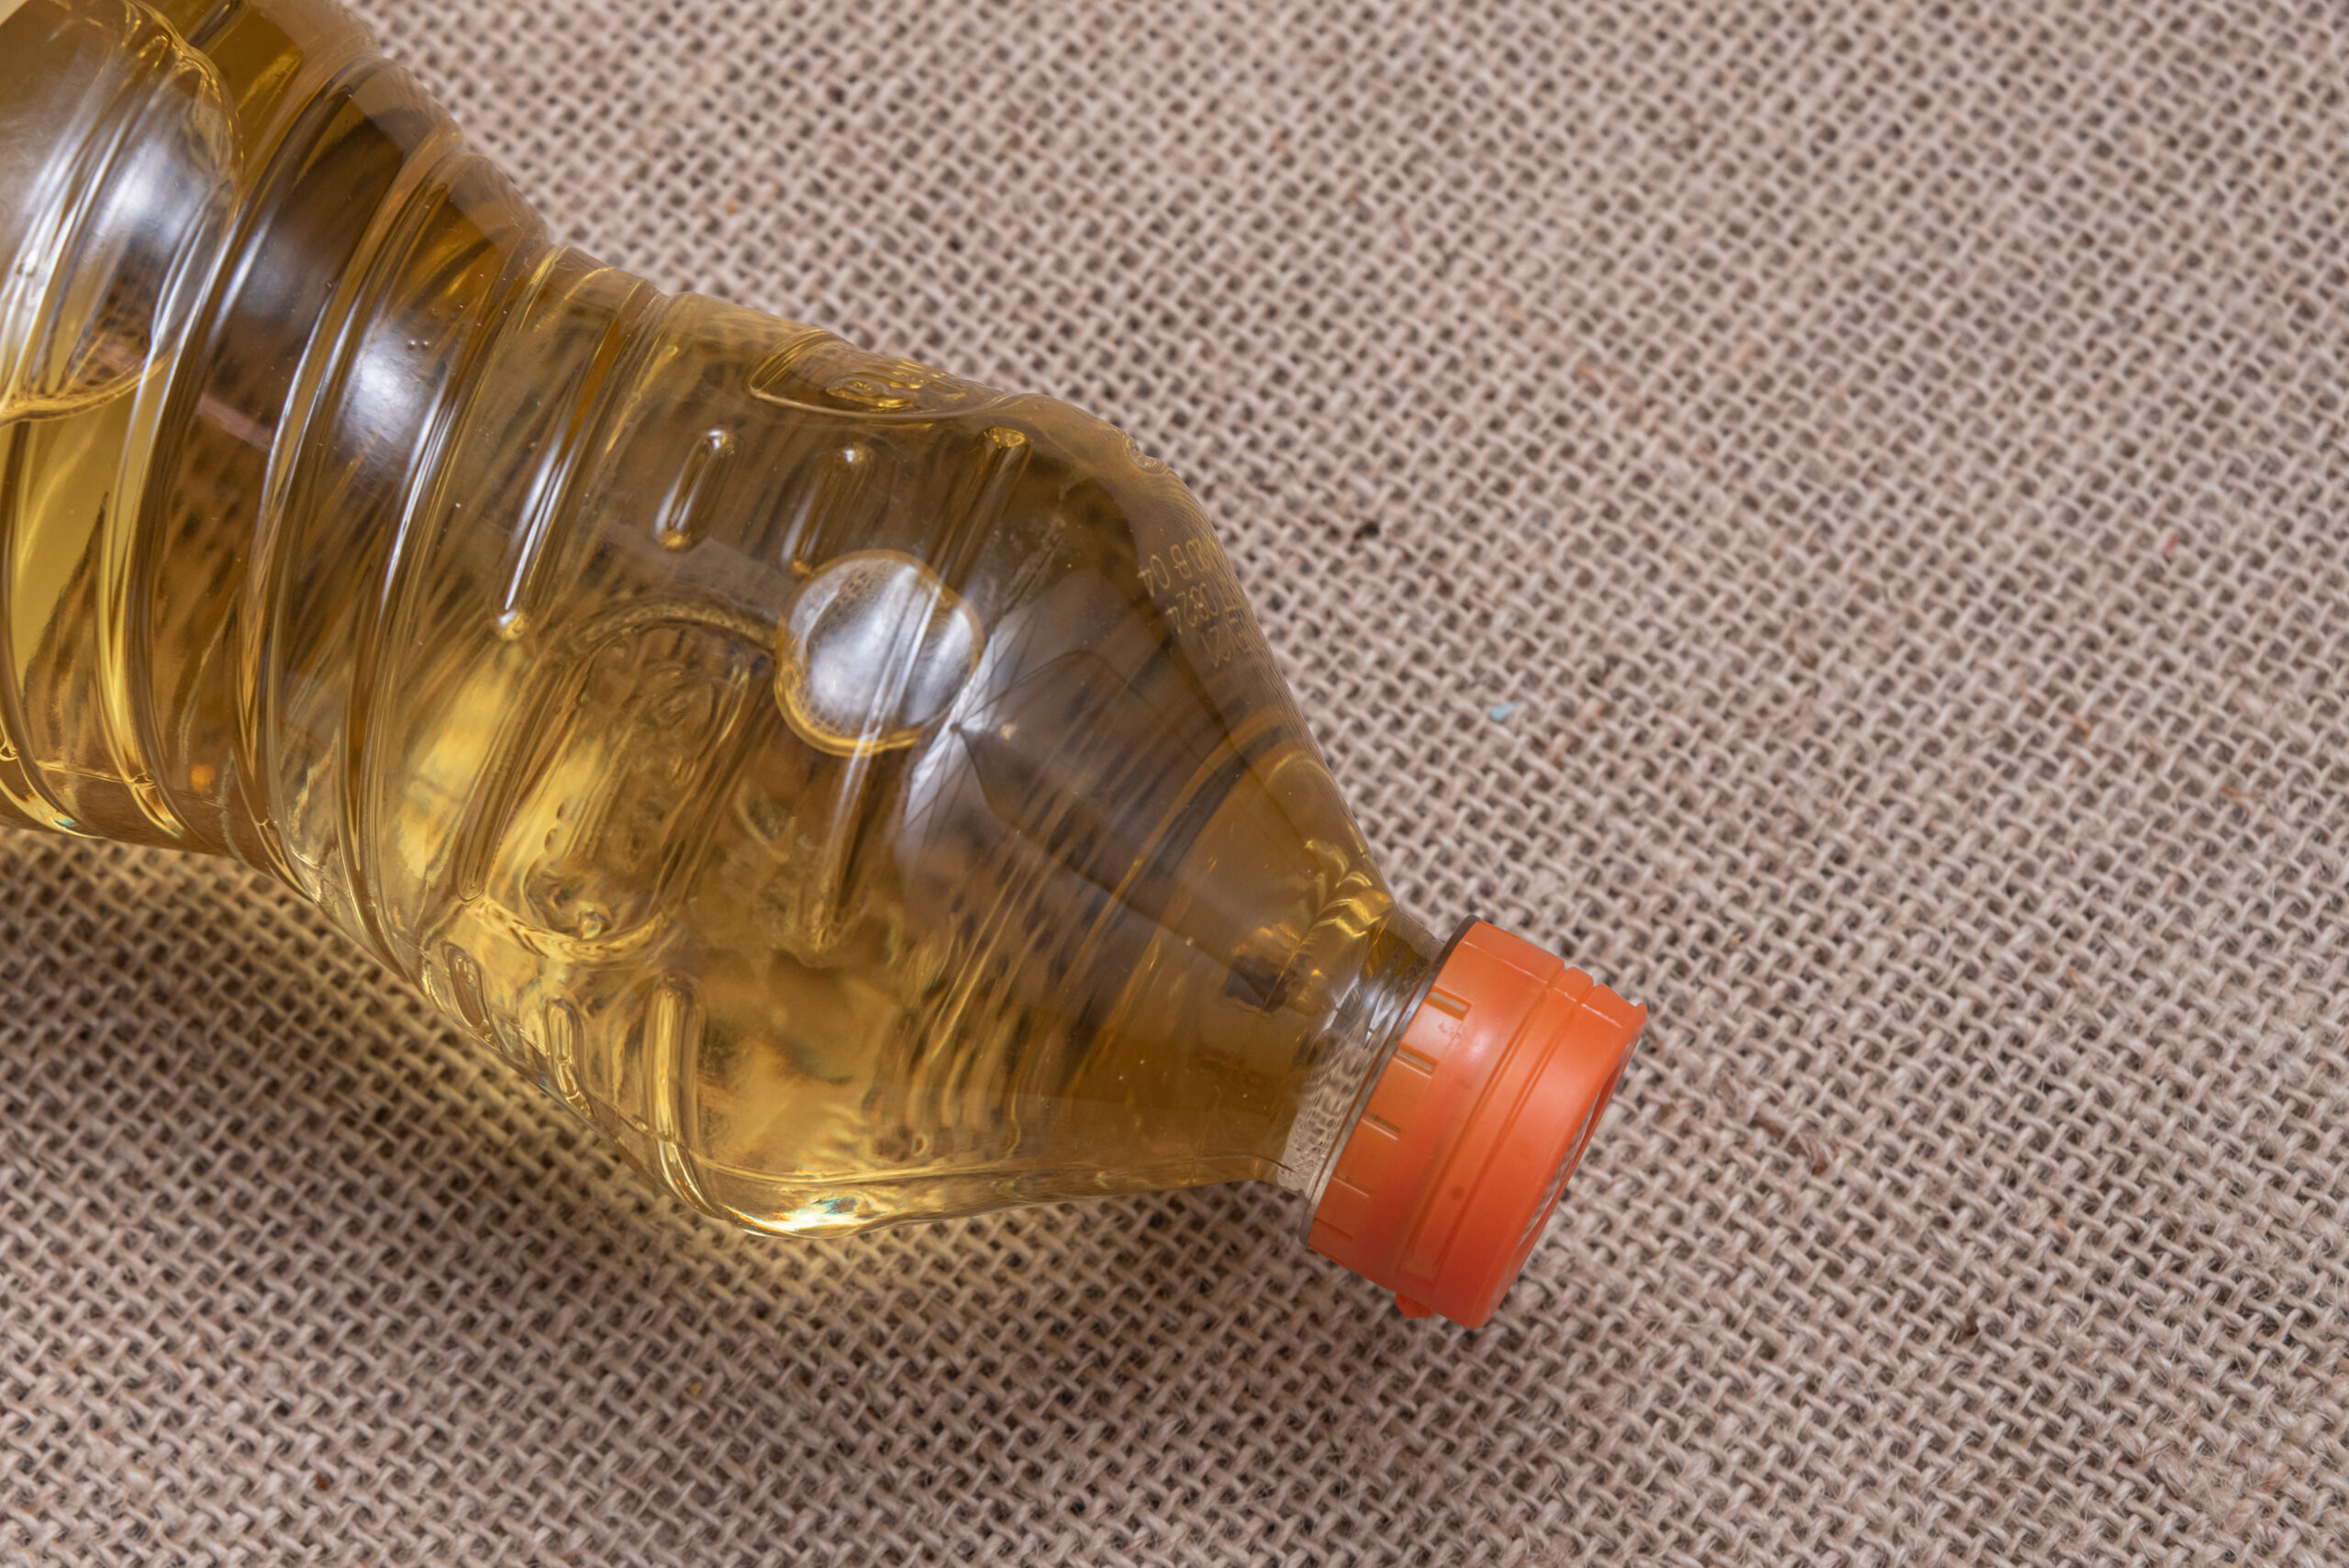 Ritiro olio esausto Veneto | Scegli il Bottigliolio